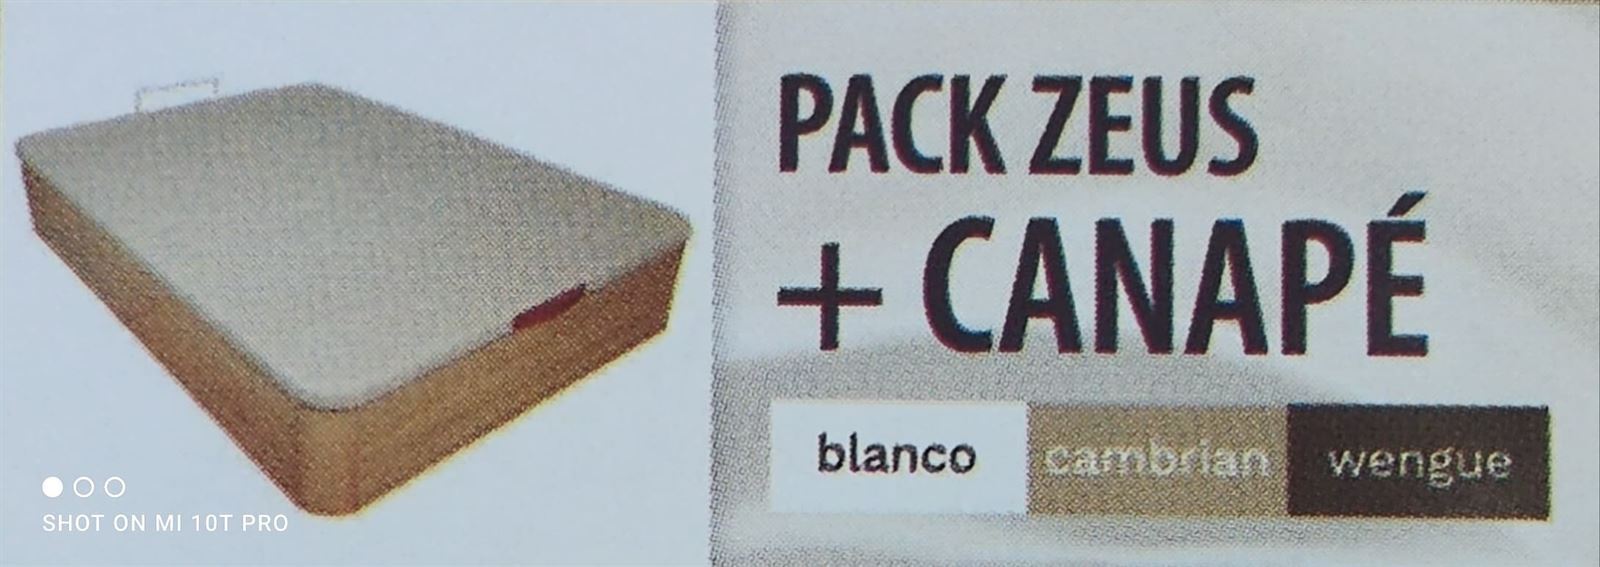 LIRON PACK COLCHON ZEUS + CANAPE - Imagen 1